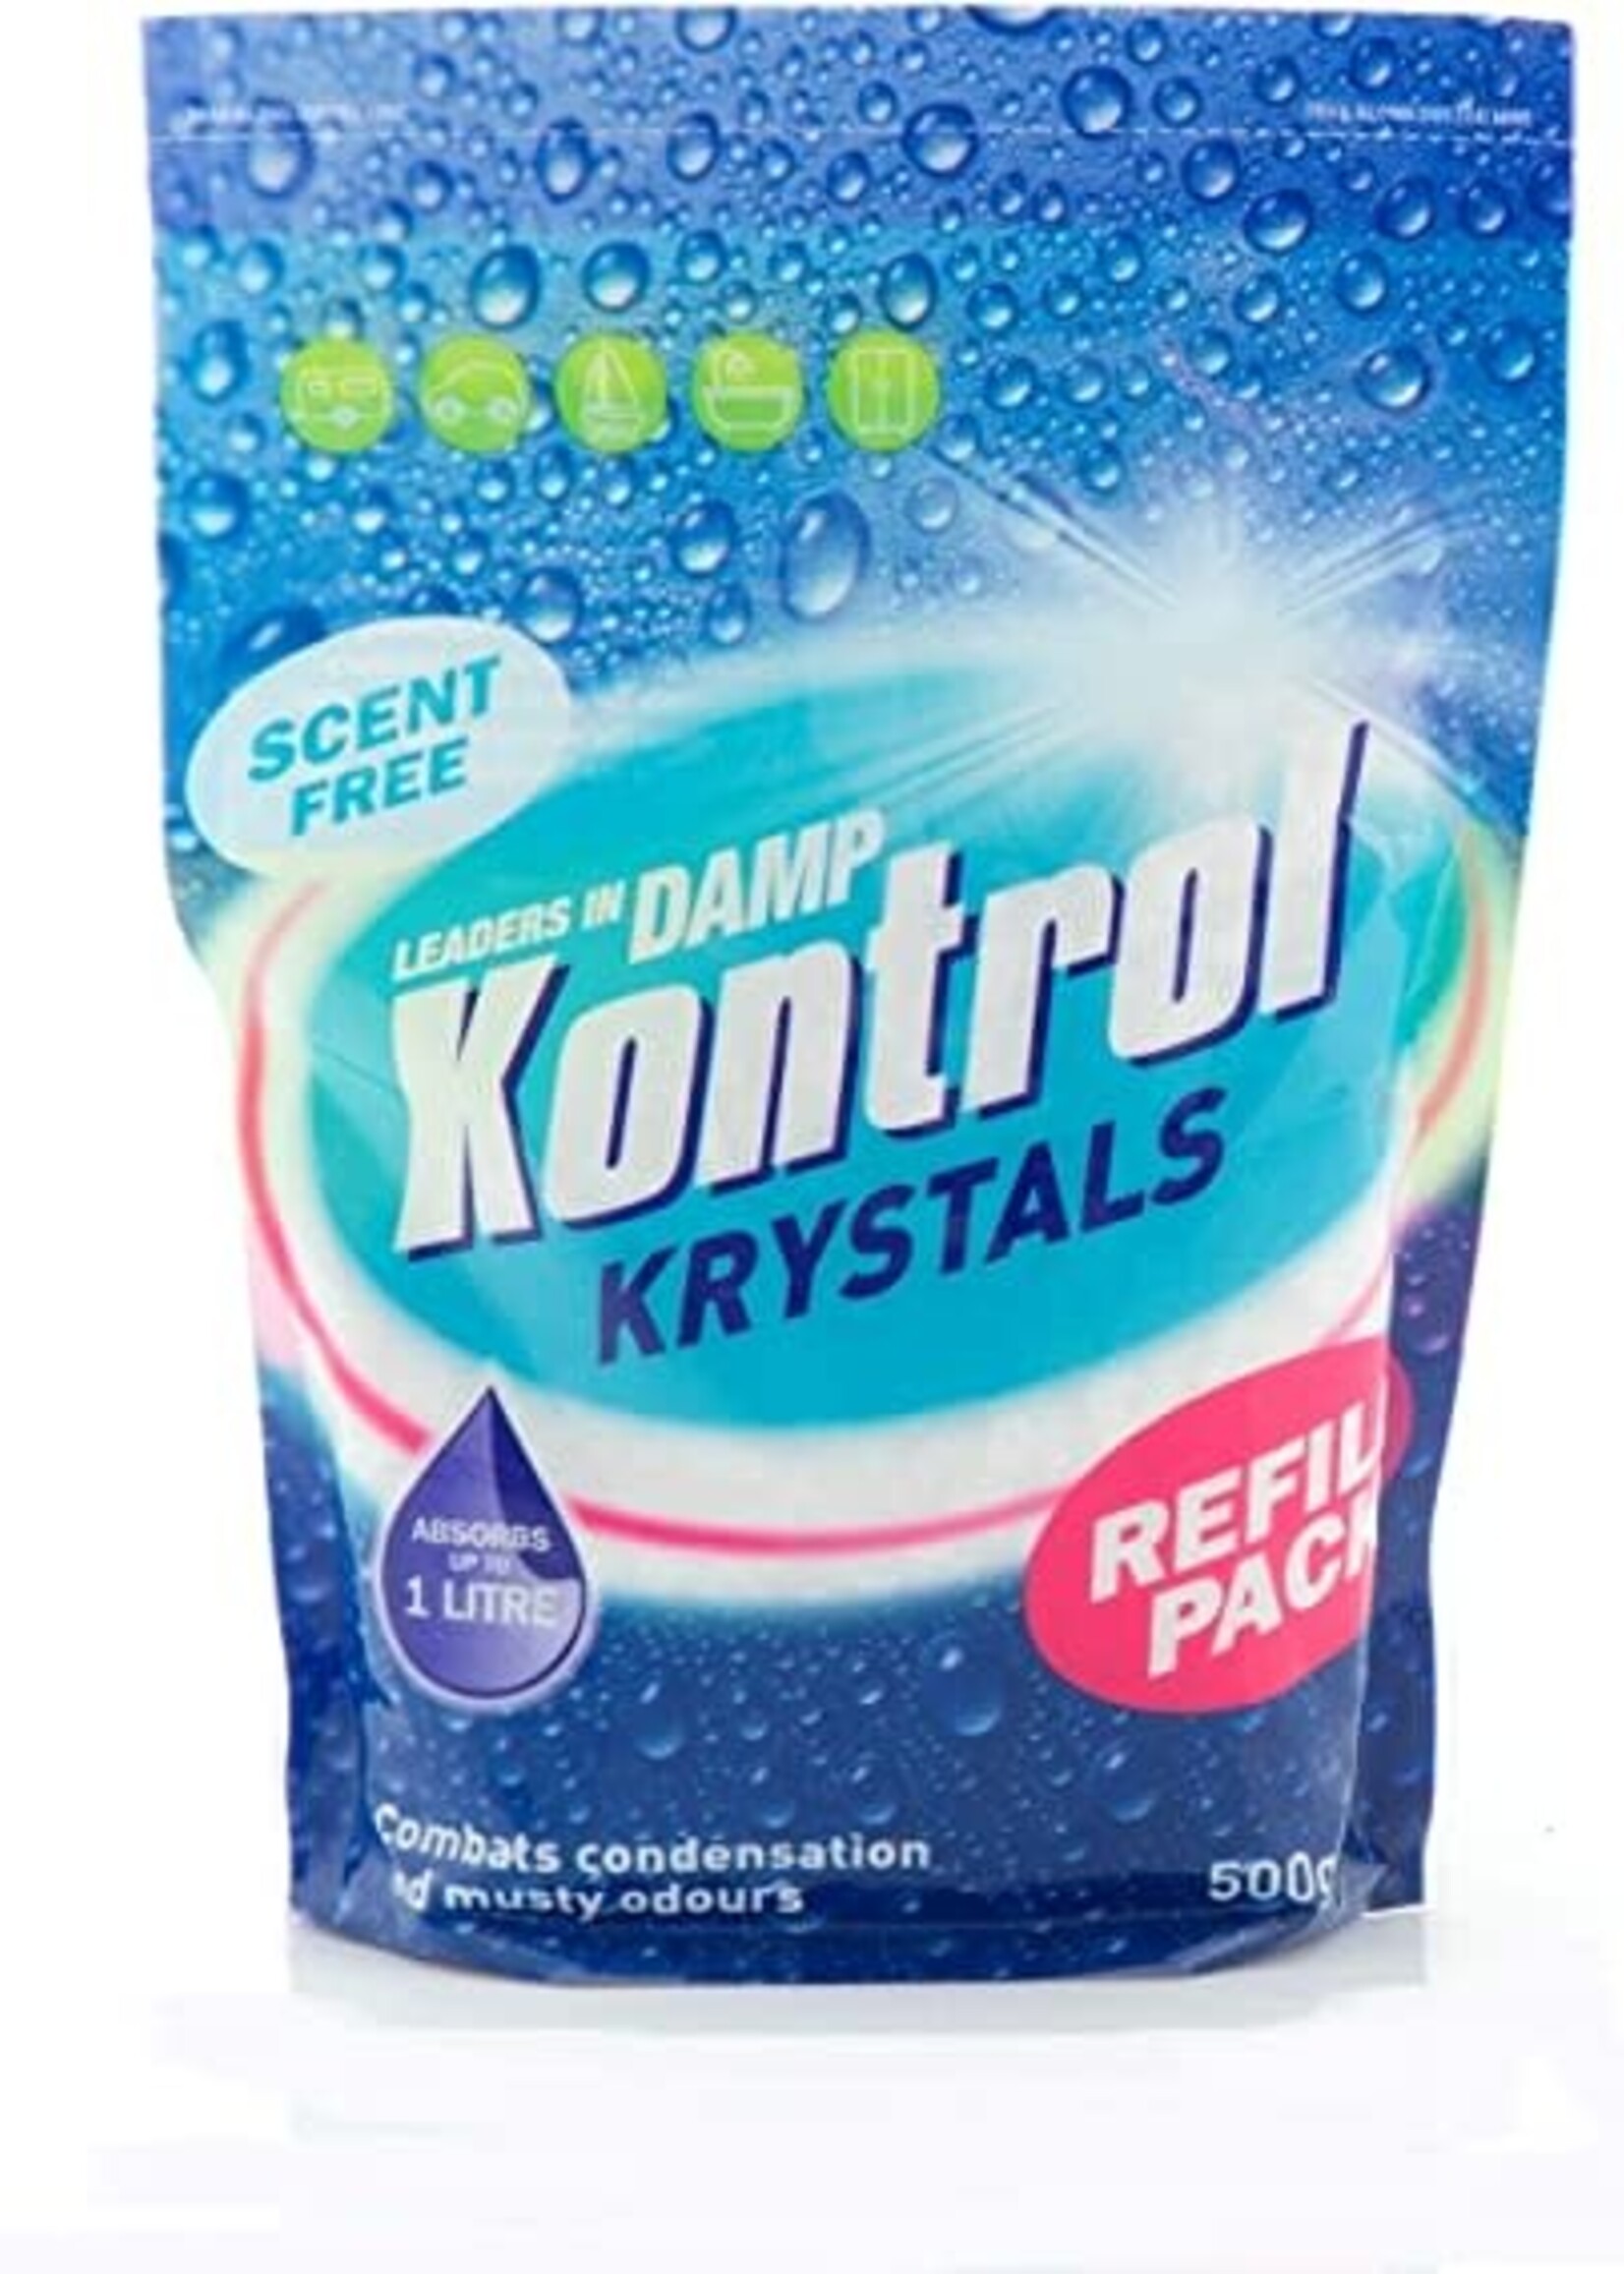 Kontrol (uk) Ltd Kontrol Krystals Refill Pack Unscented 500g